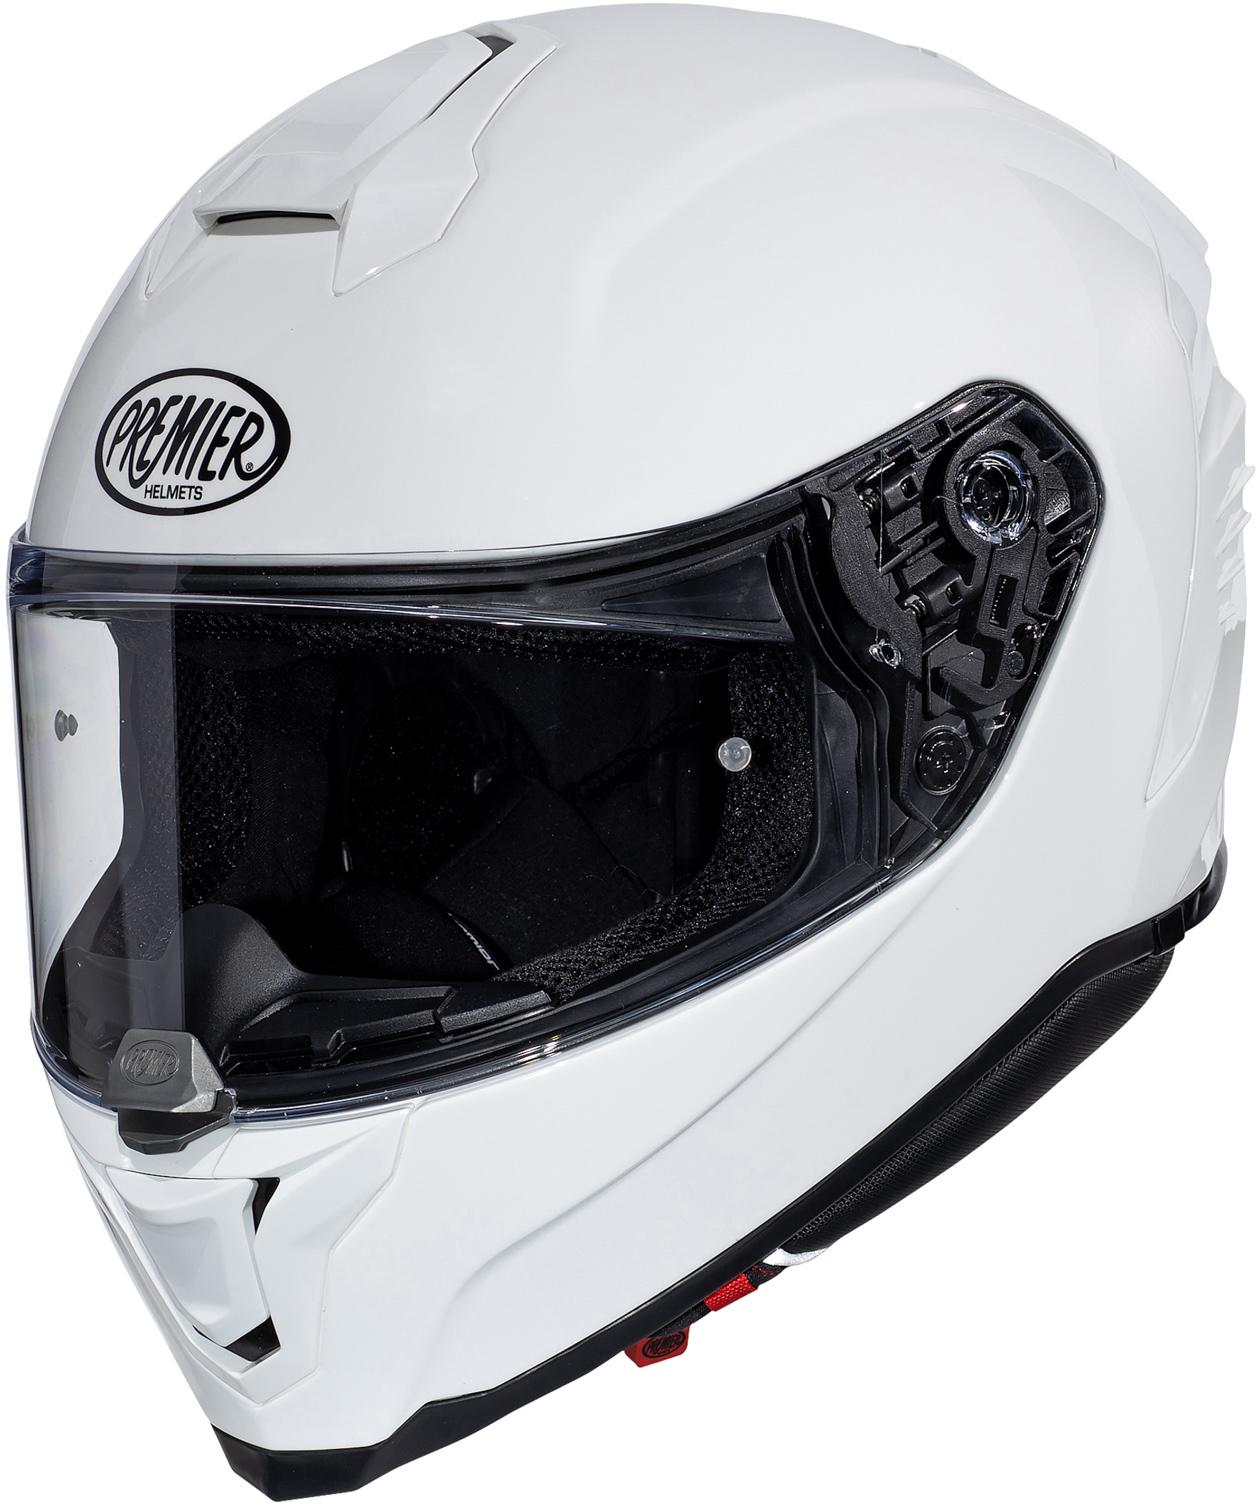 Premier Hyper Full Face Motorcycle Helmet - White, Xl